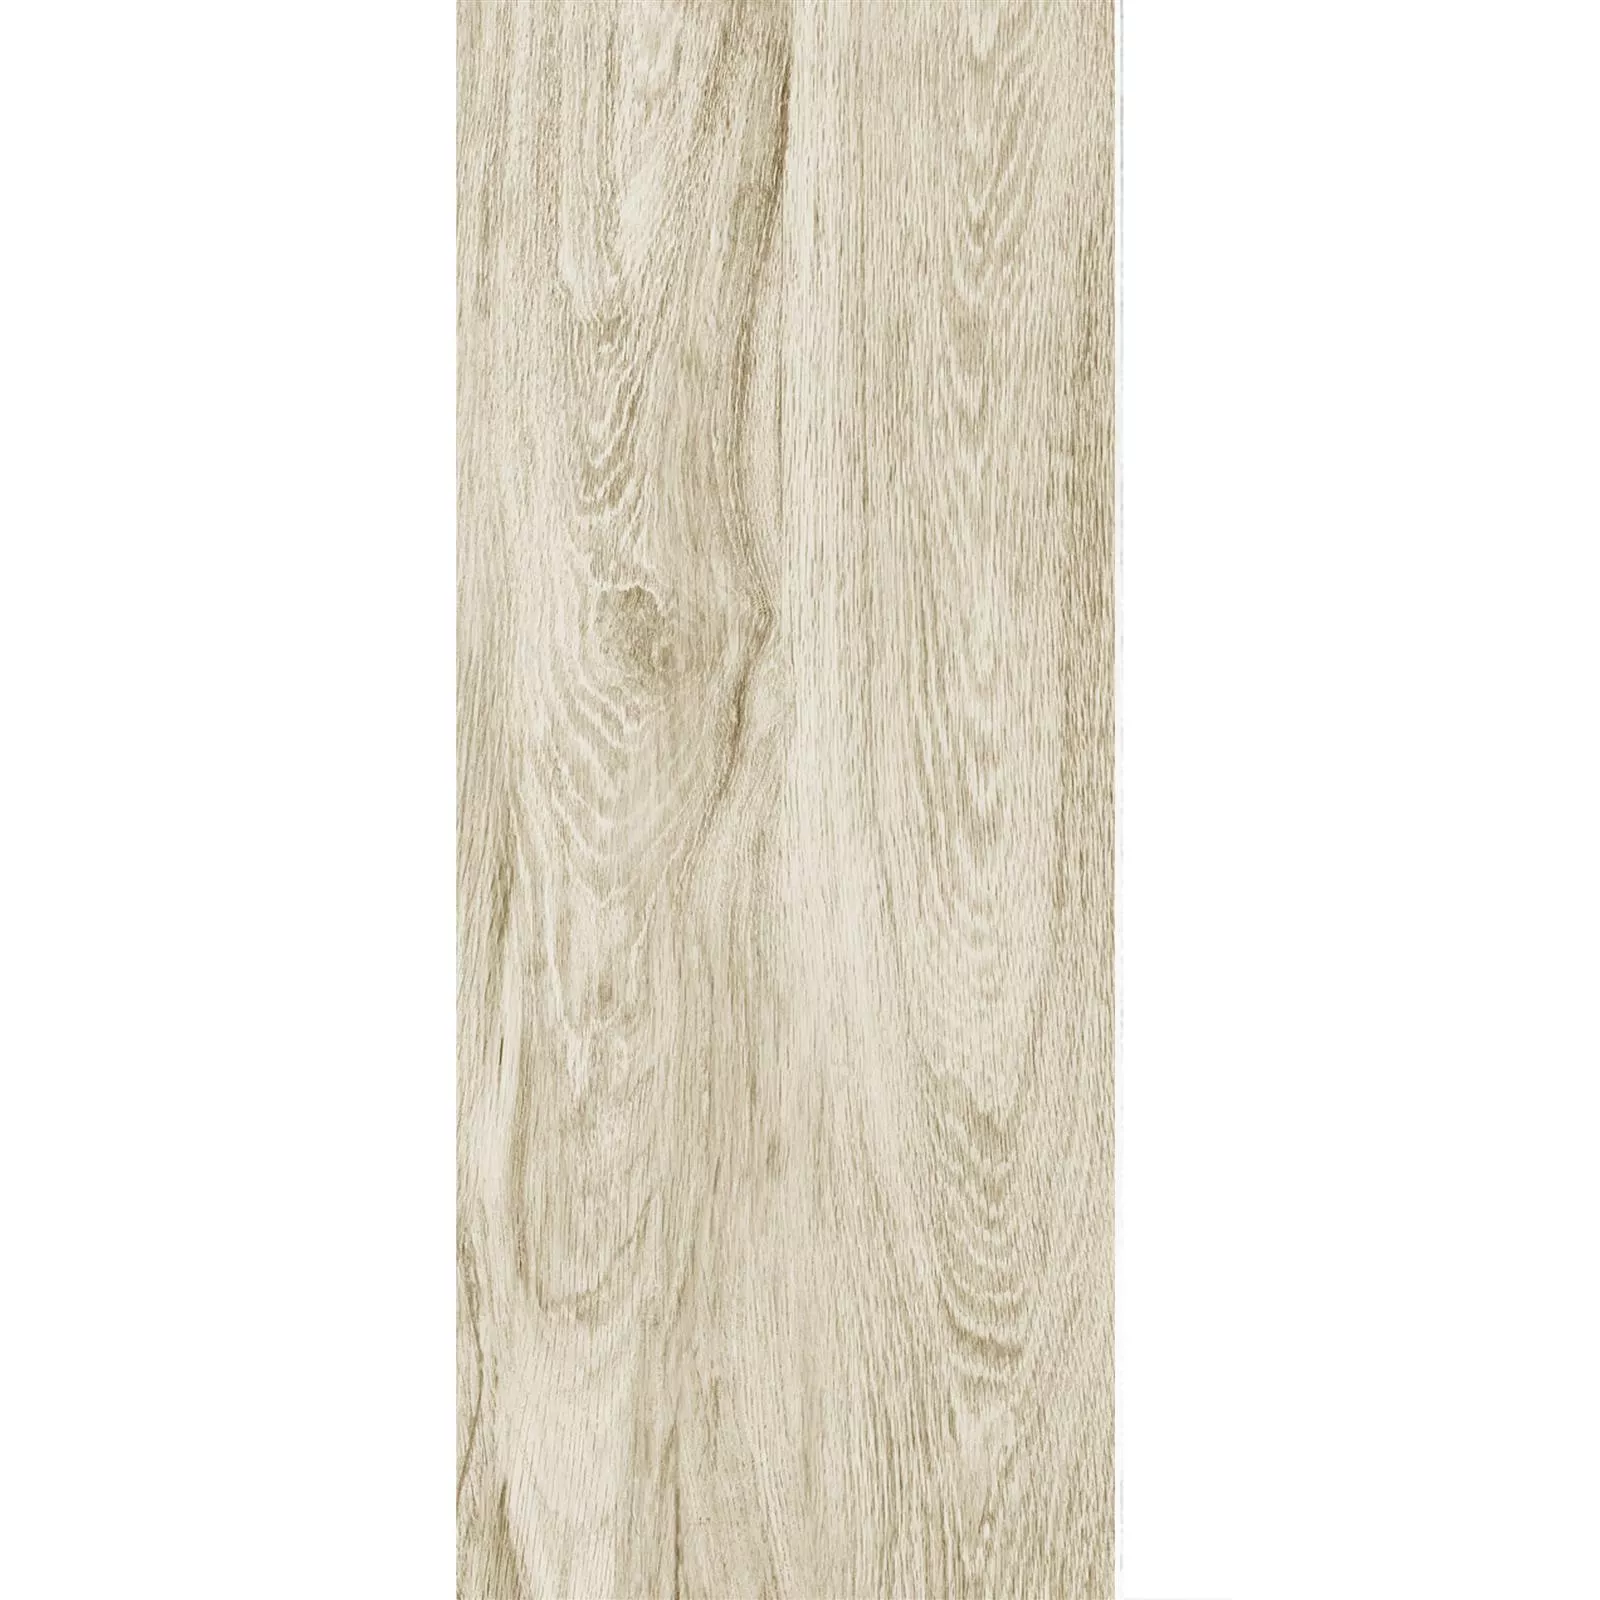 Piastrella Esterni Legno Ottica Strassburg Beige 30x120cm